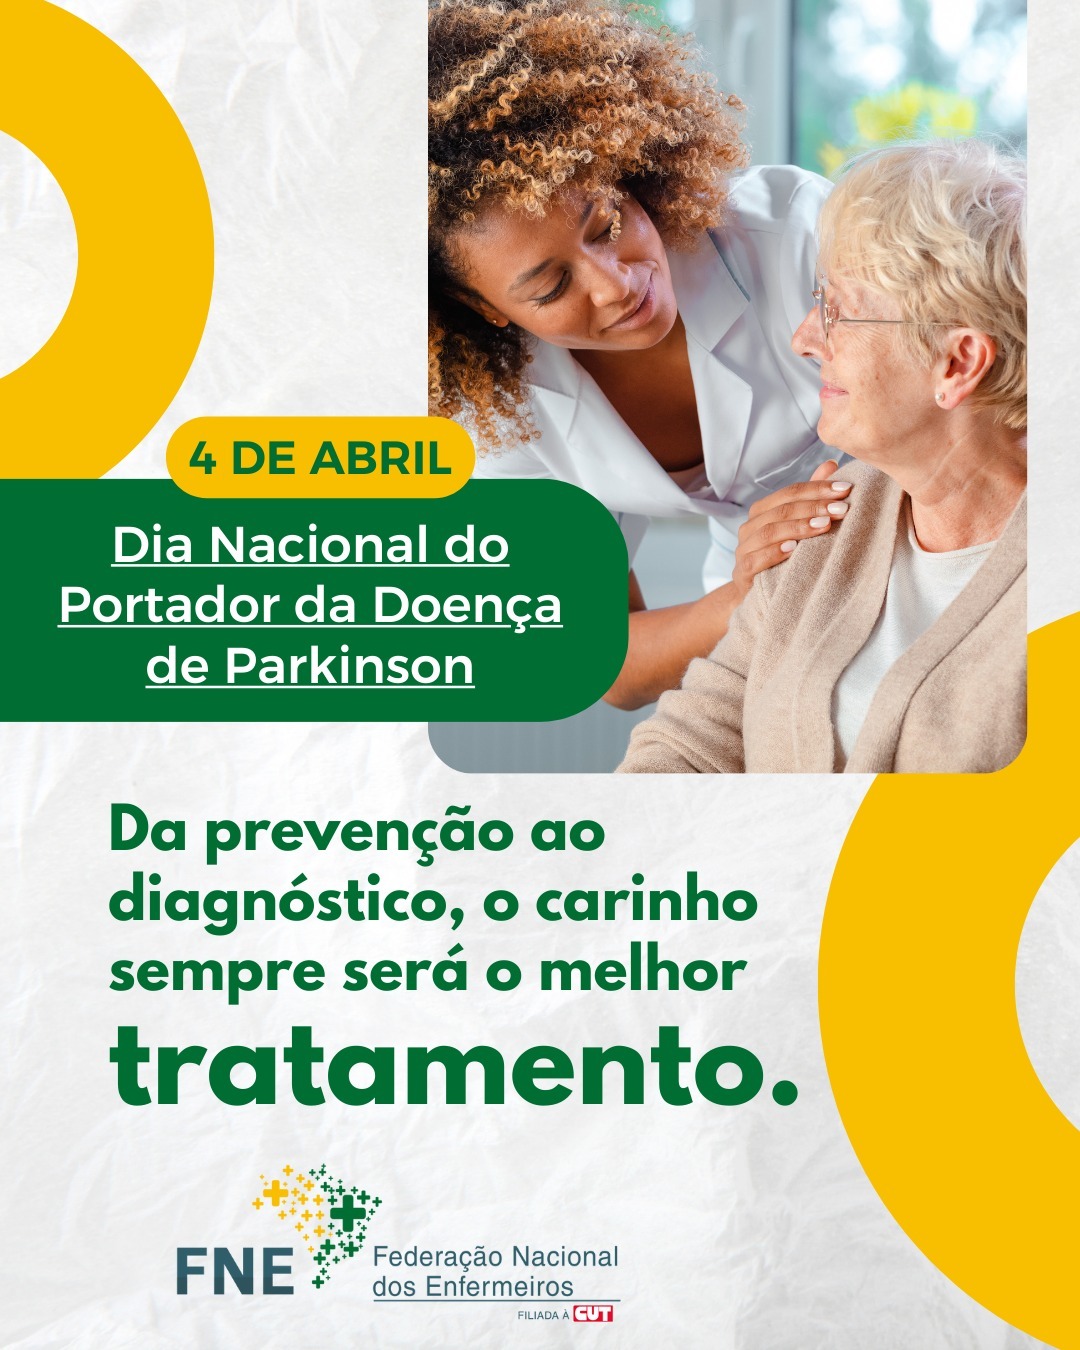 4 de abril - Dia Nacional do portador da Doença de Parkinson